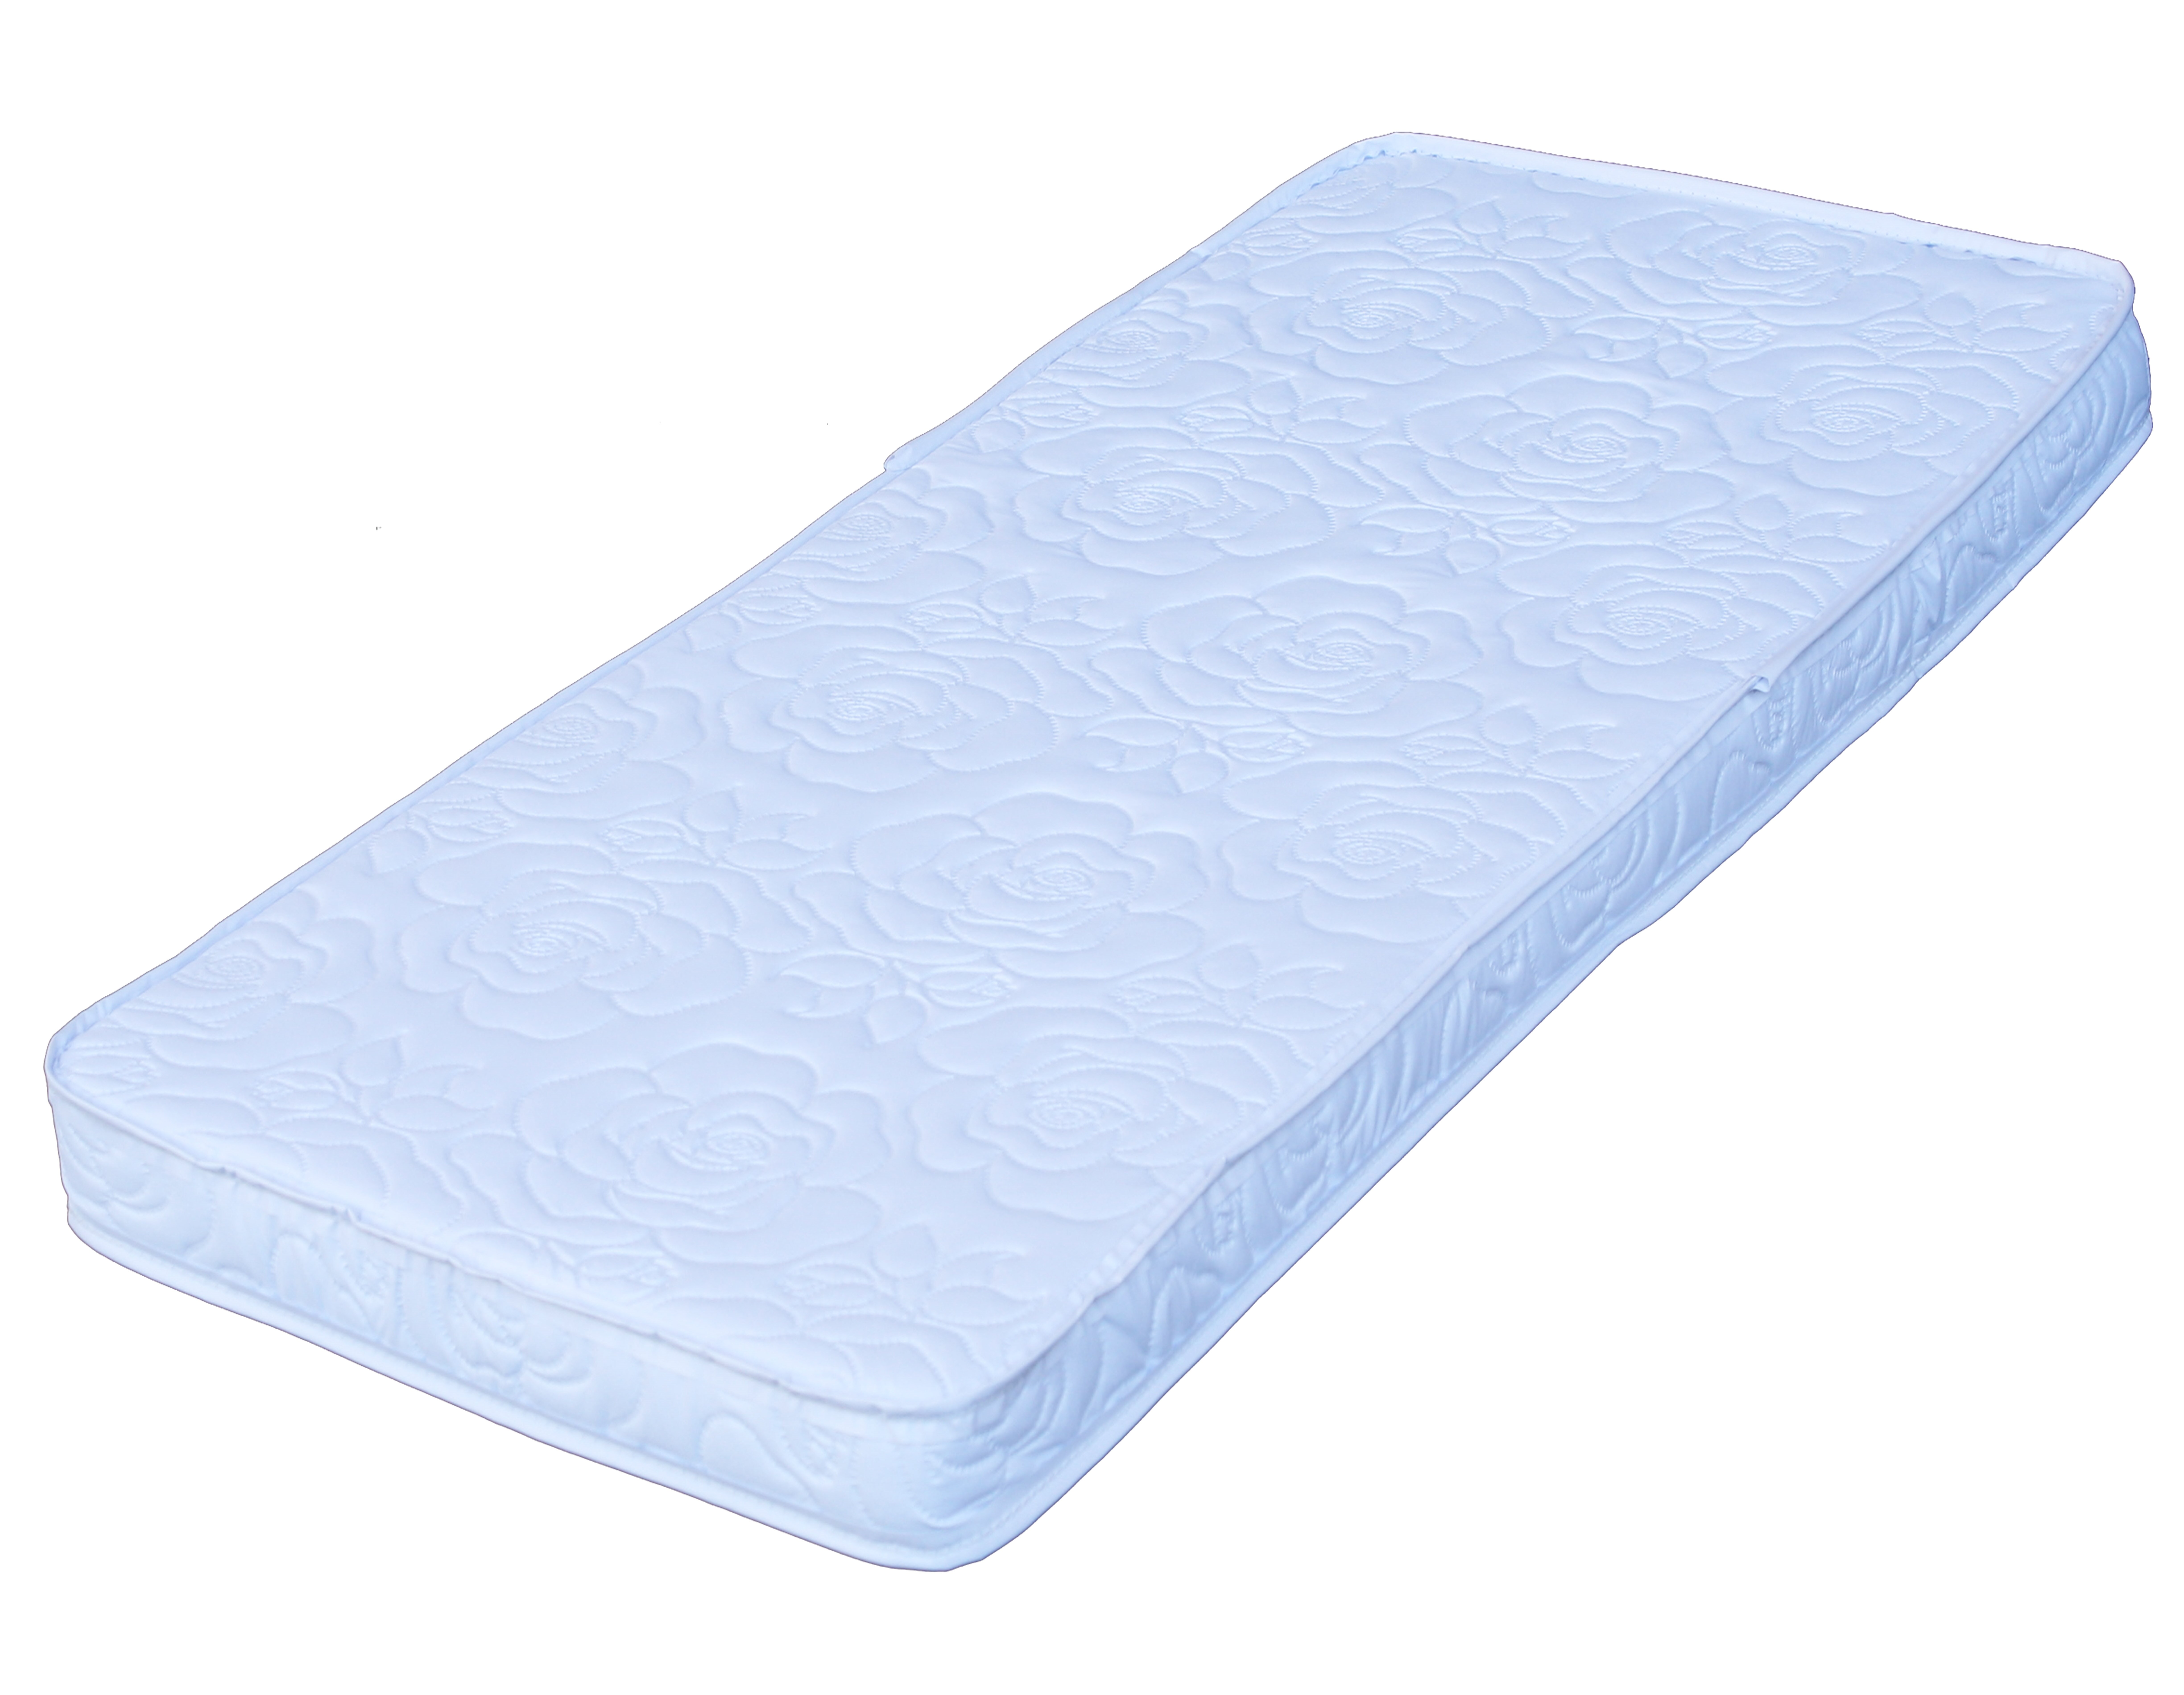 bassinest mattress pad